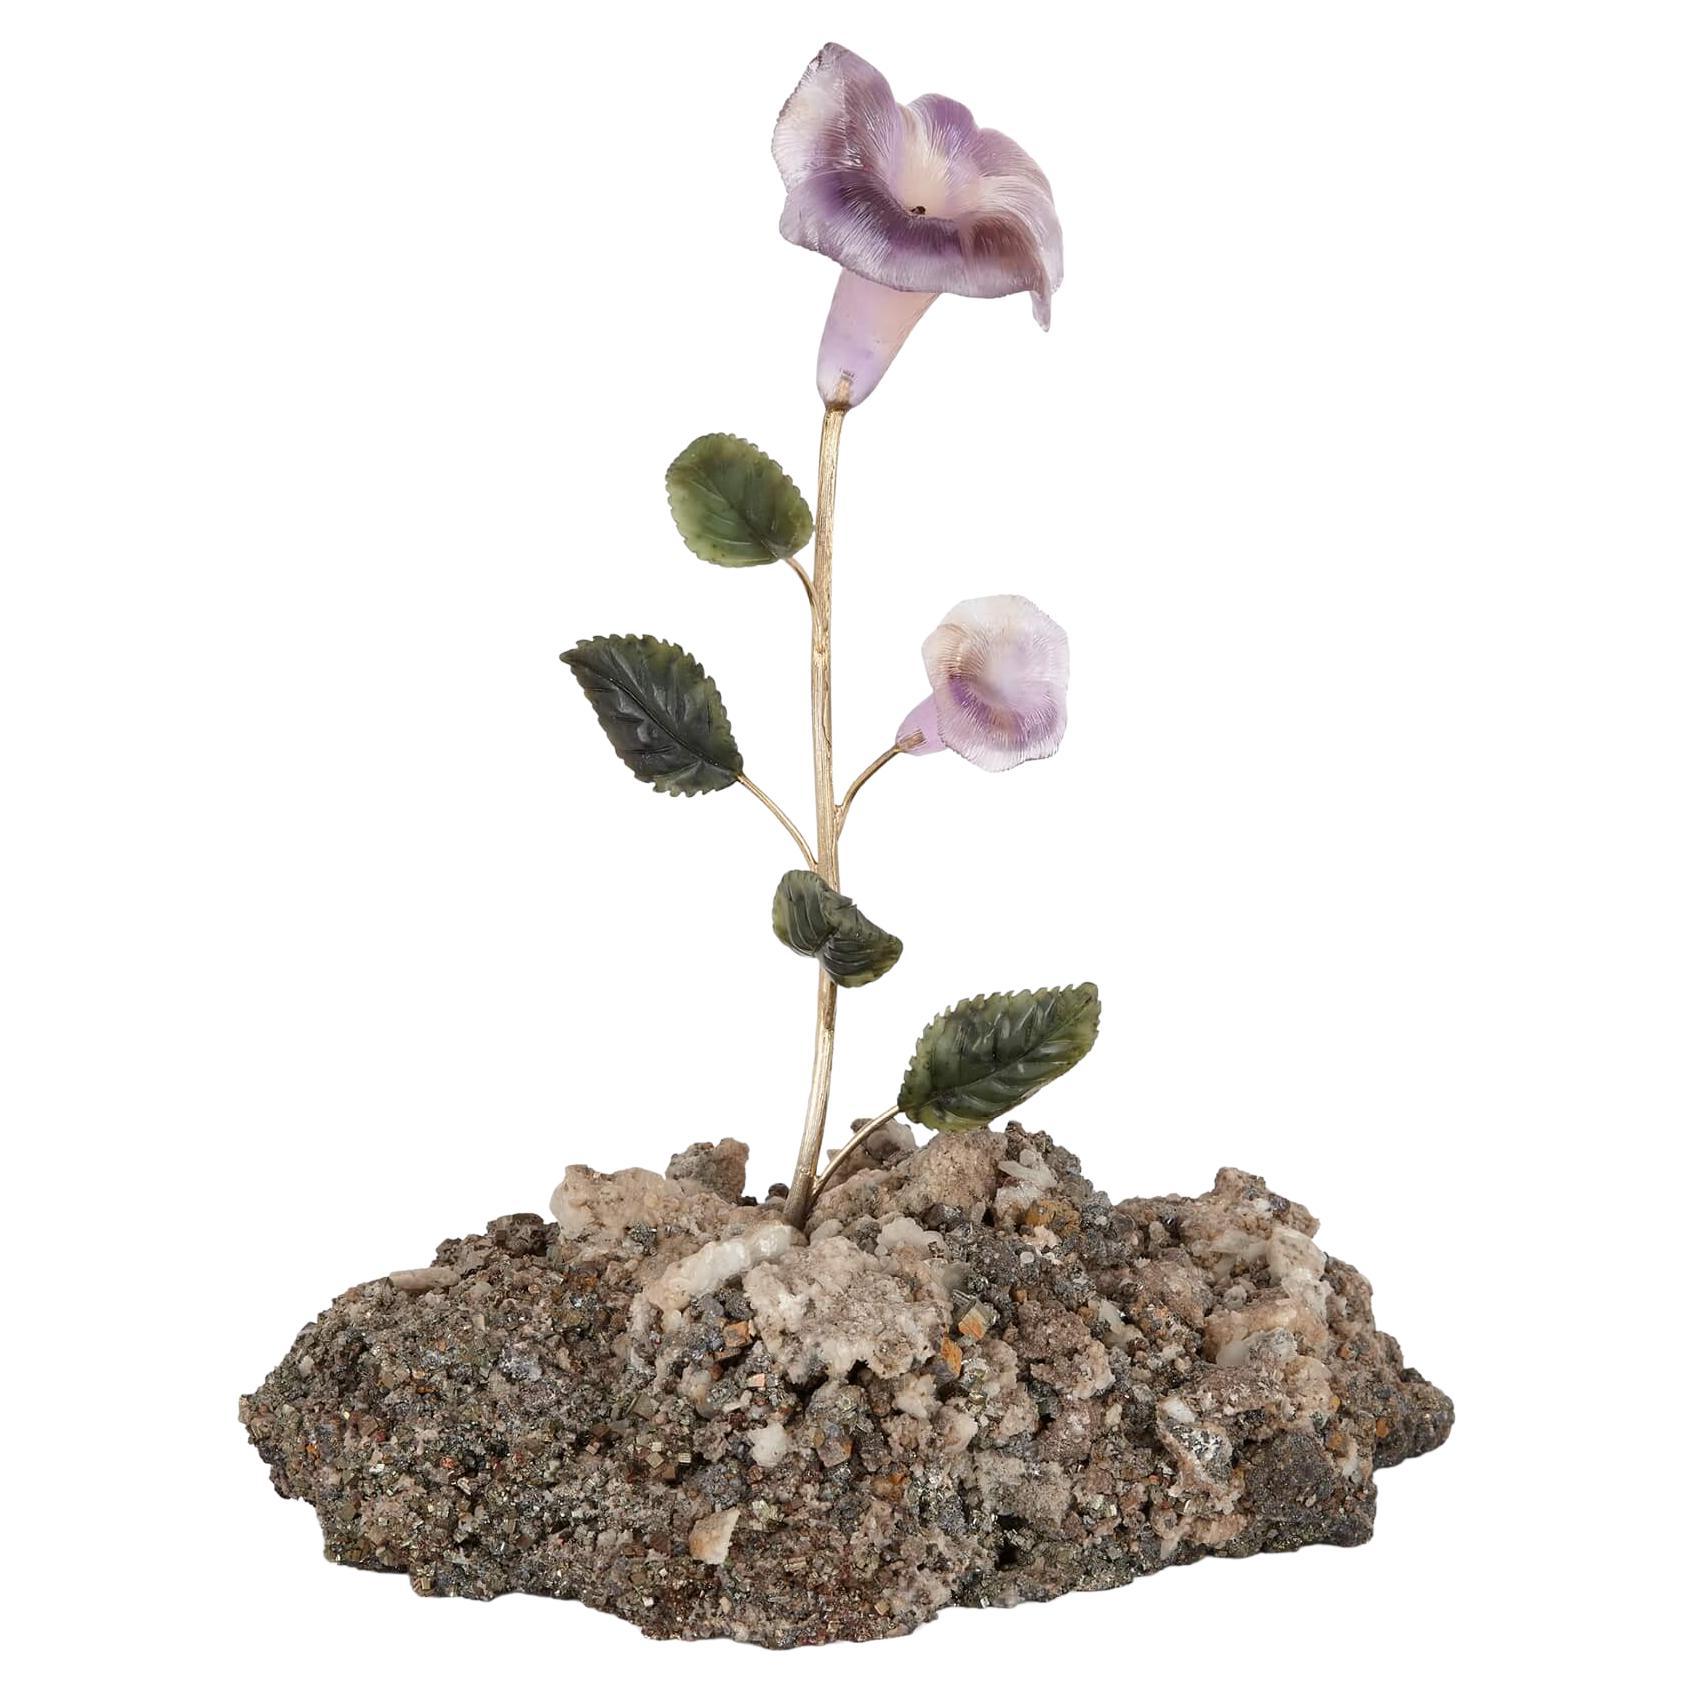 Hardstone, Quartz, Amethyst, Nephrite and Silver-Gilt Flower Model For Sale